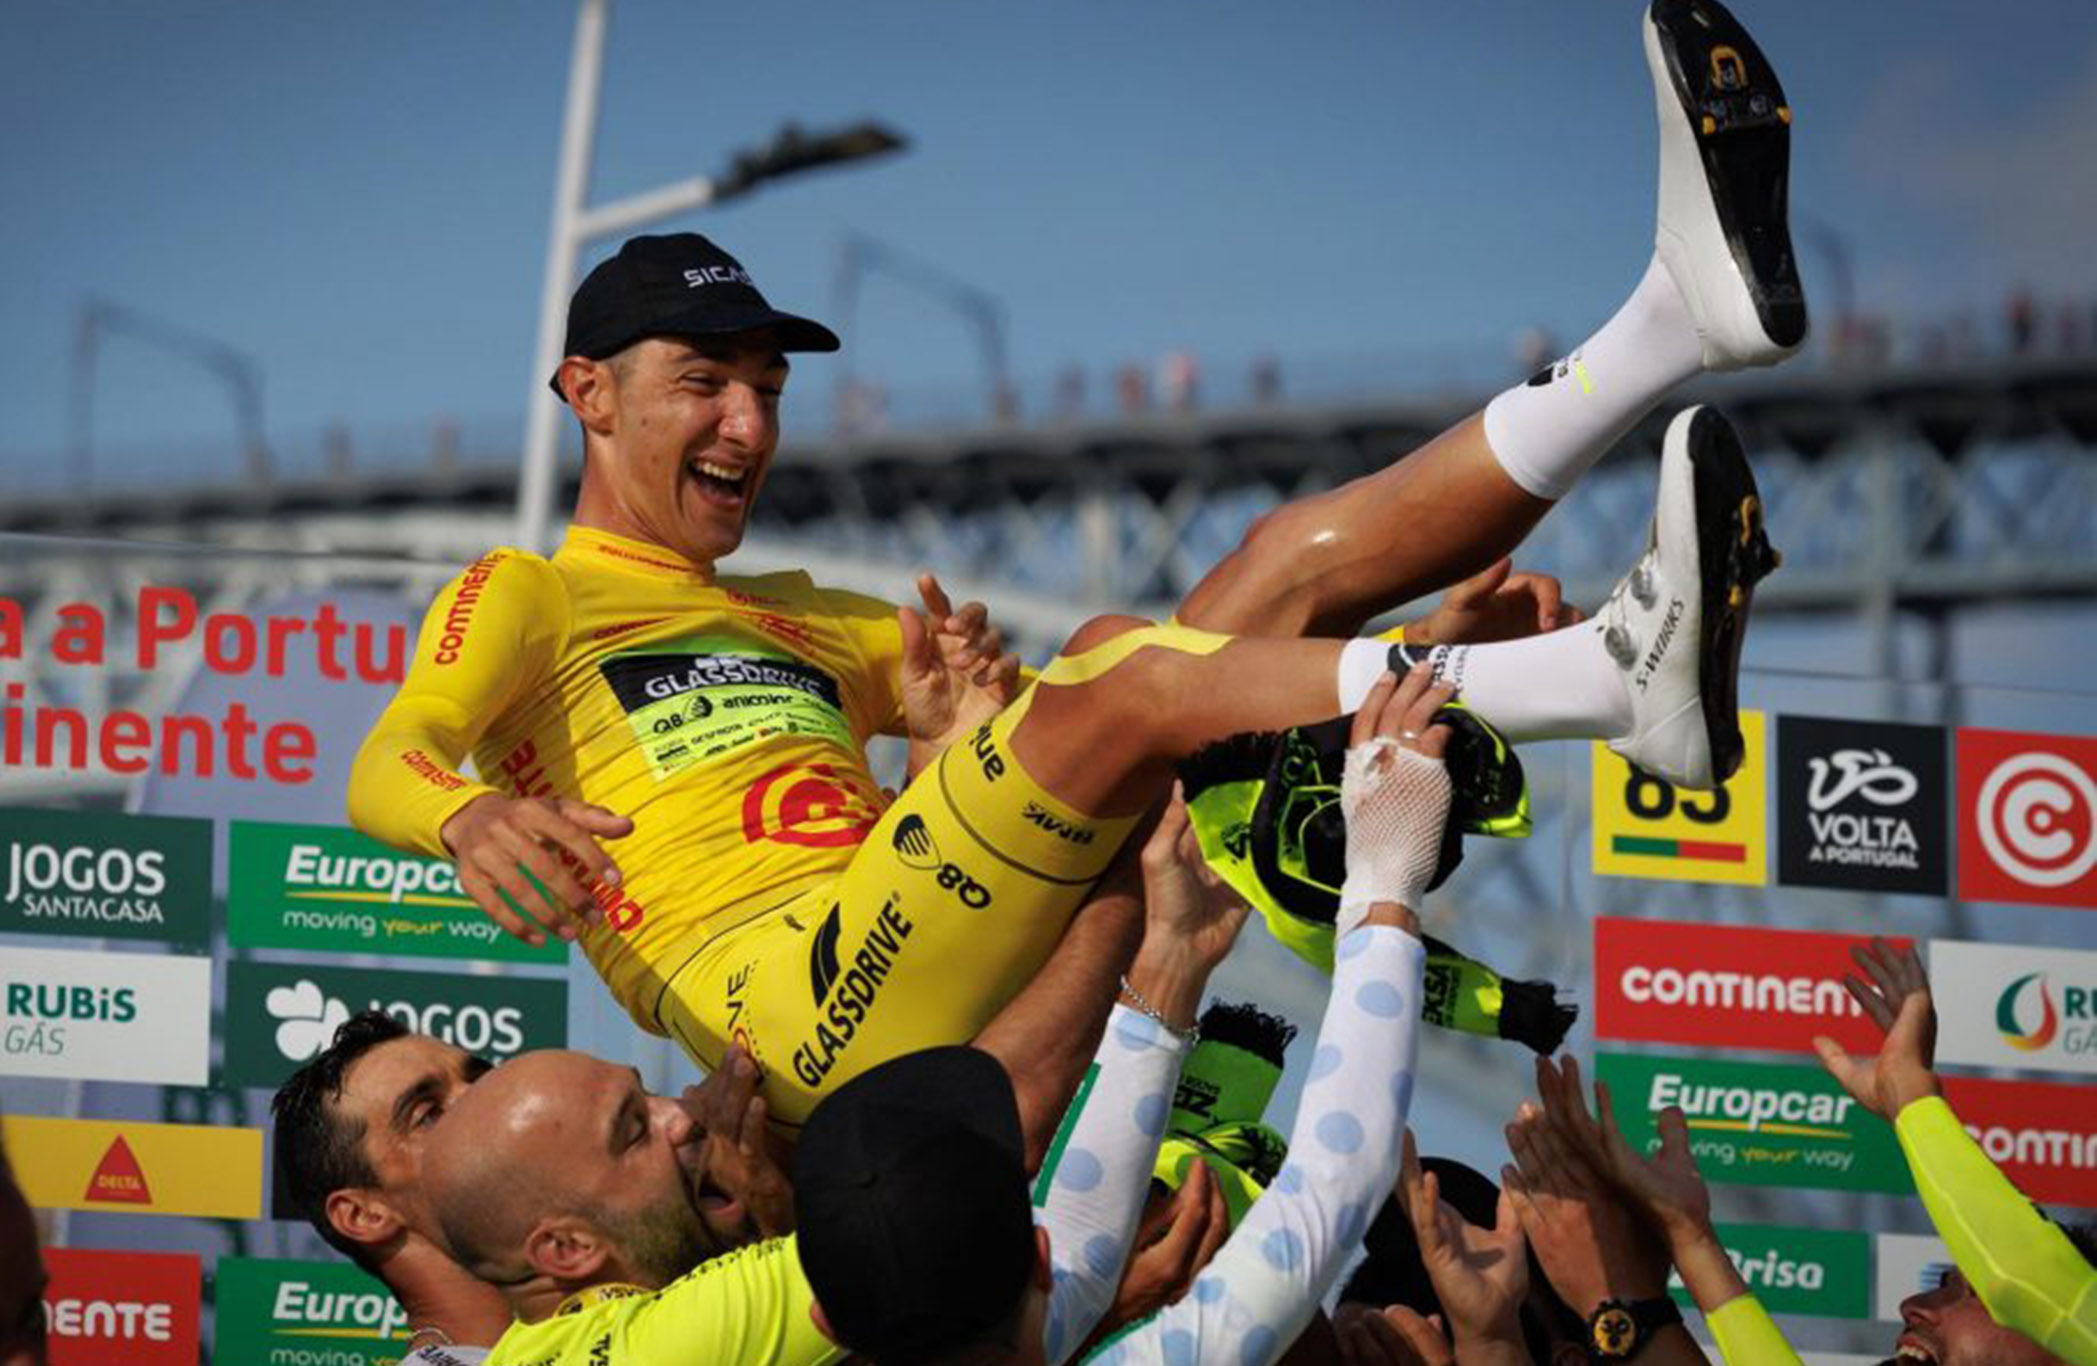 Mauricio Moreira podría ser declarado ganador de la Vuelta de Portugal de 2021 por sanción por doping a Antunes